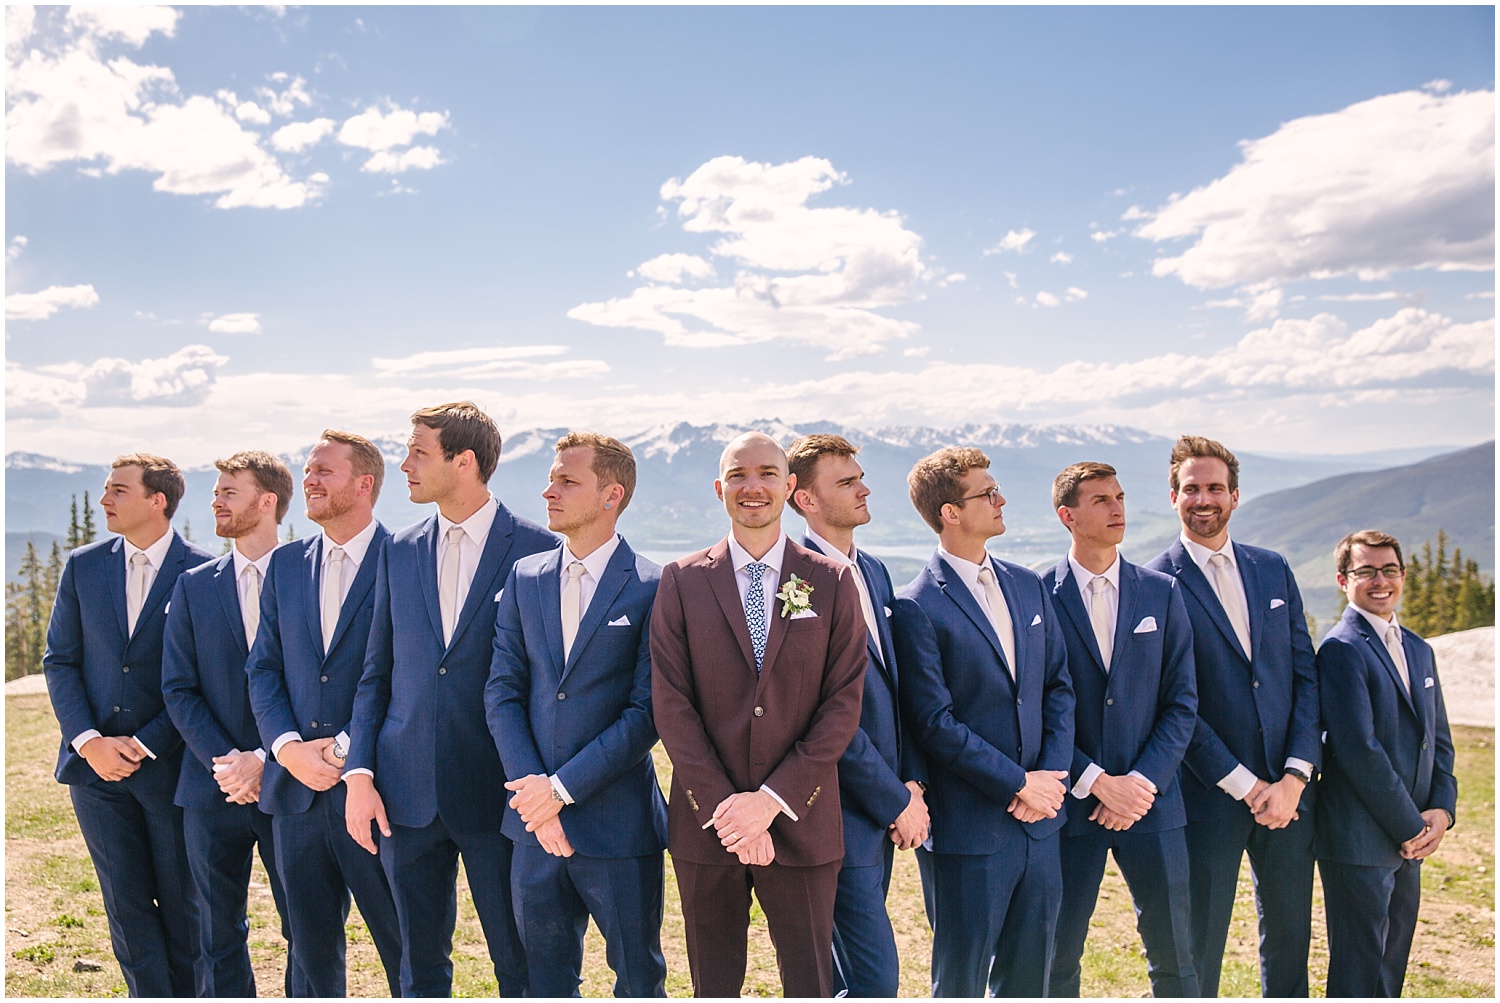 Groom in maroon and groomsmen in dark navy suits for Keystone Colorado wedding